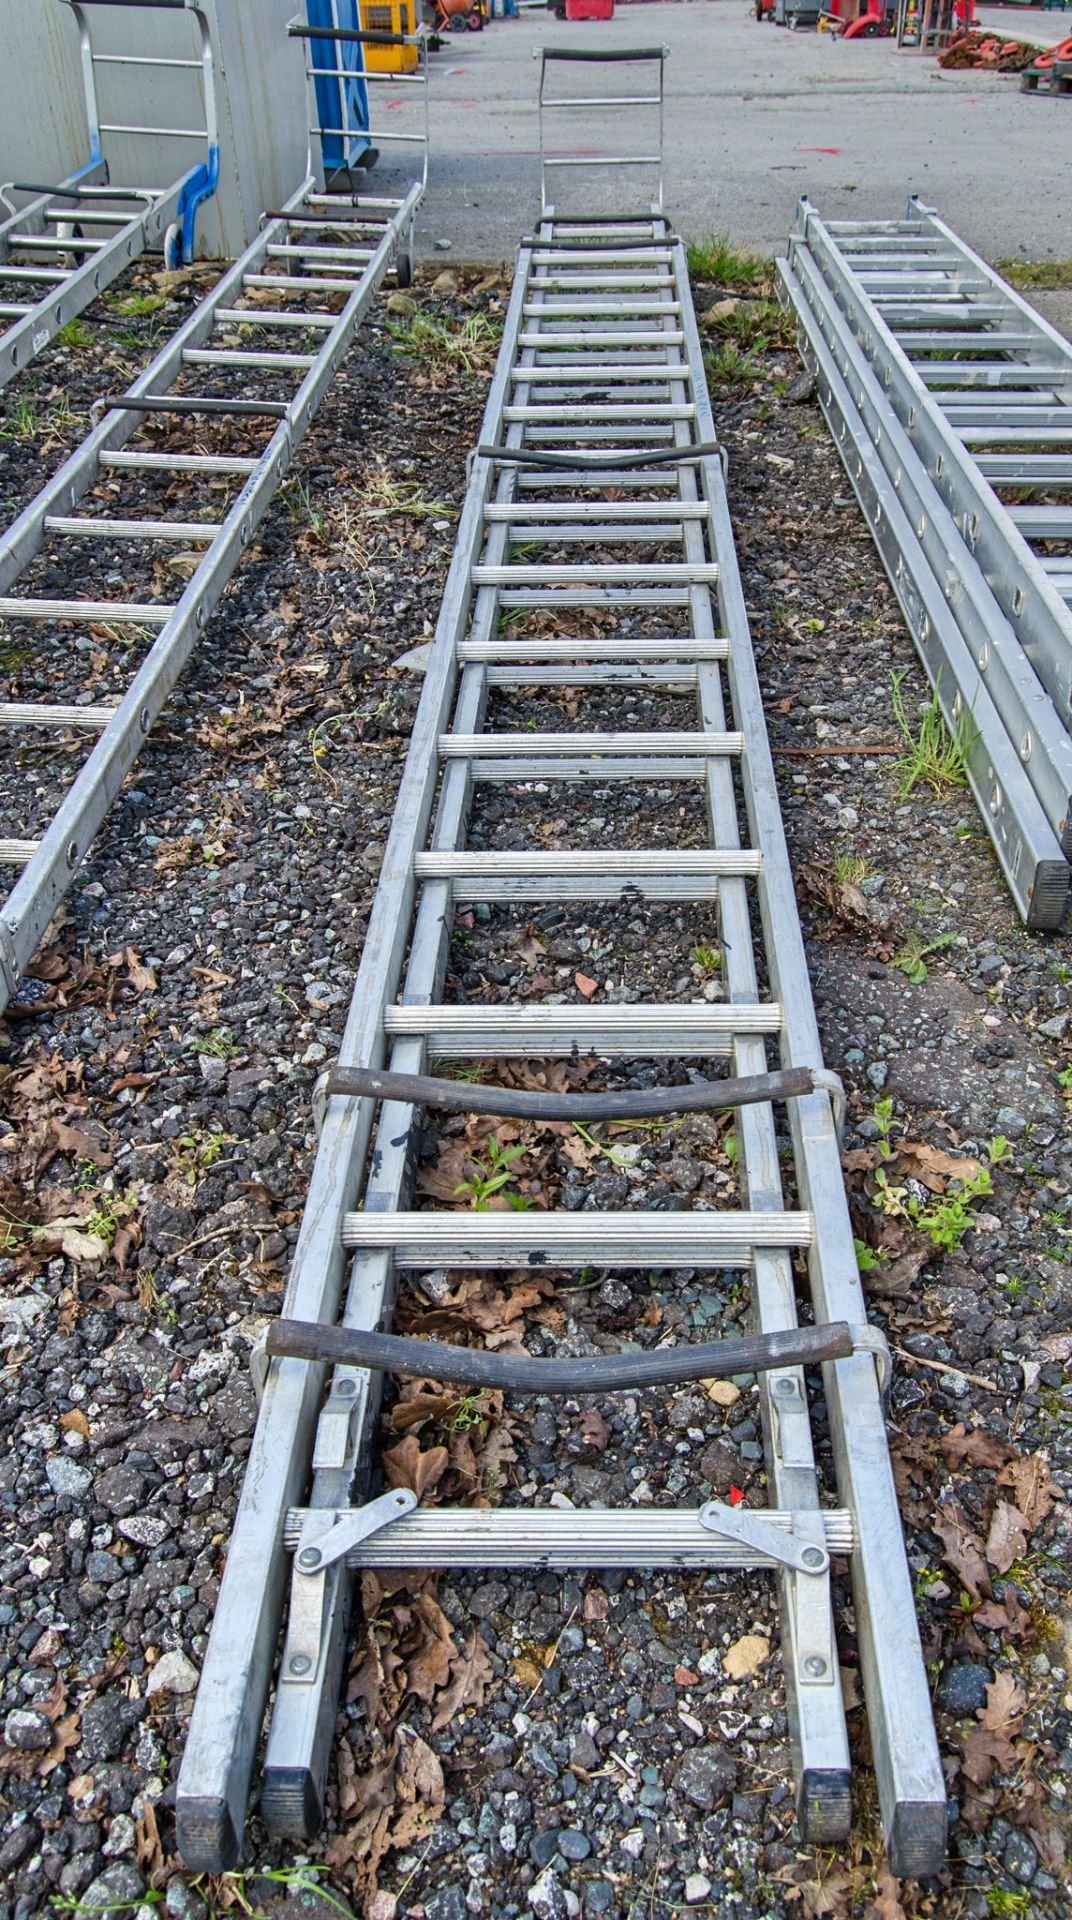 2 stage aluminium ladder 33711586